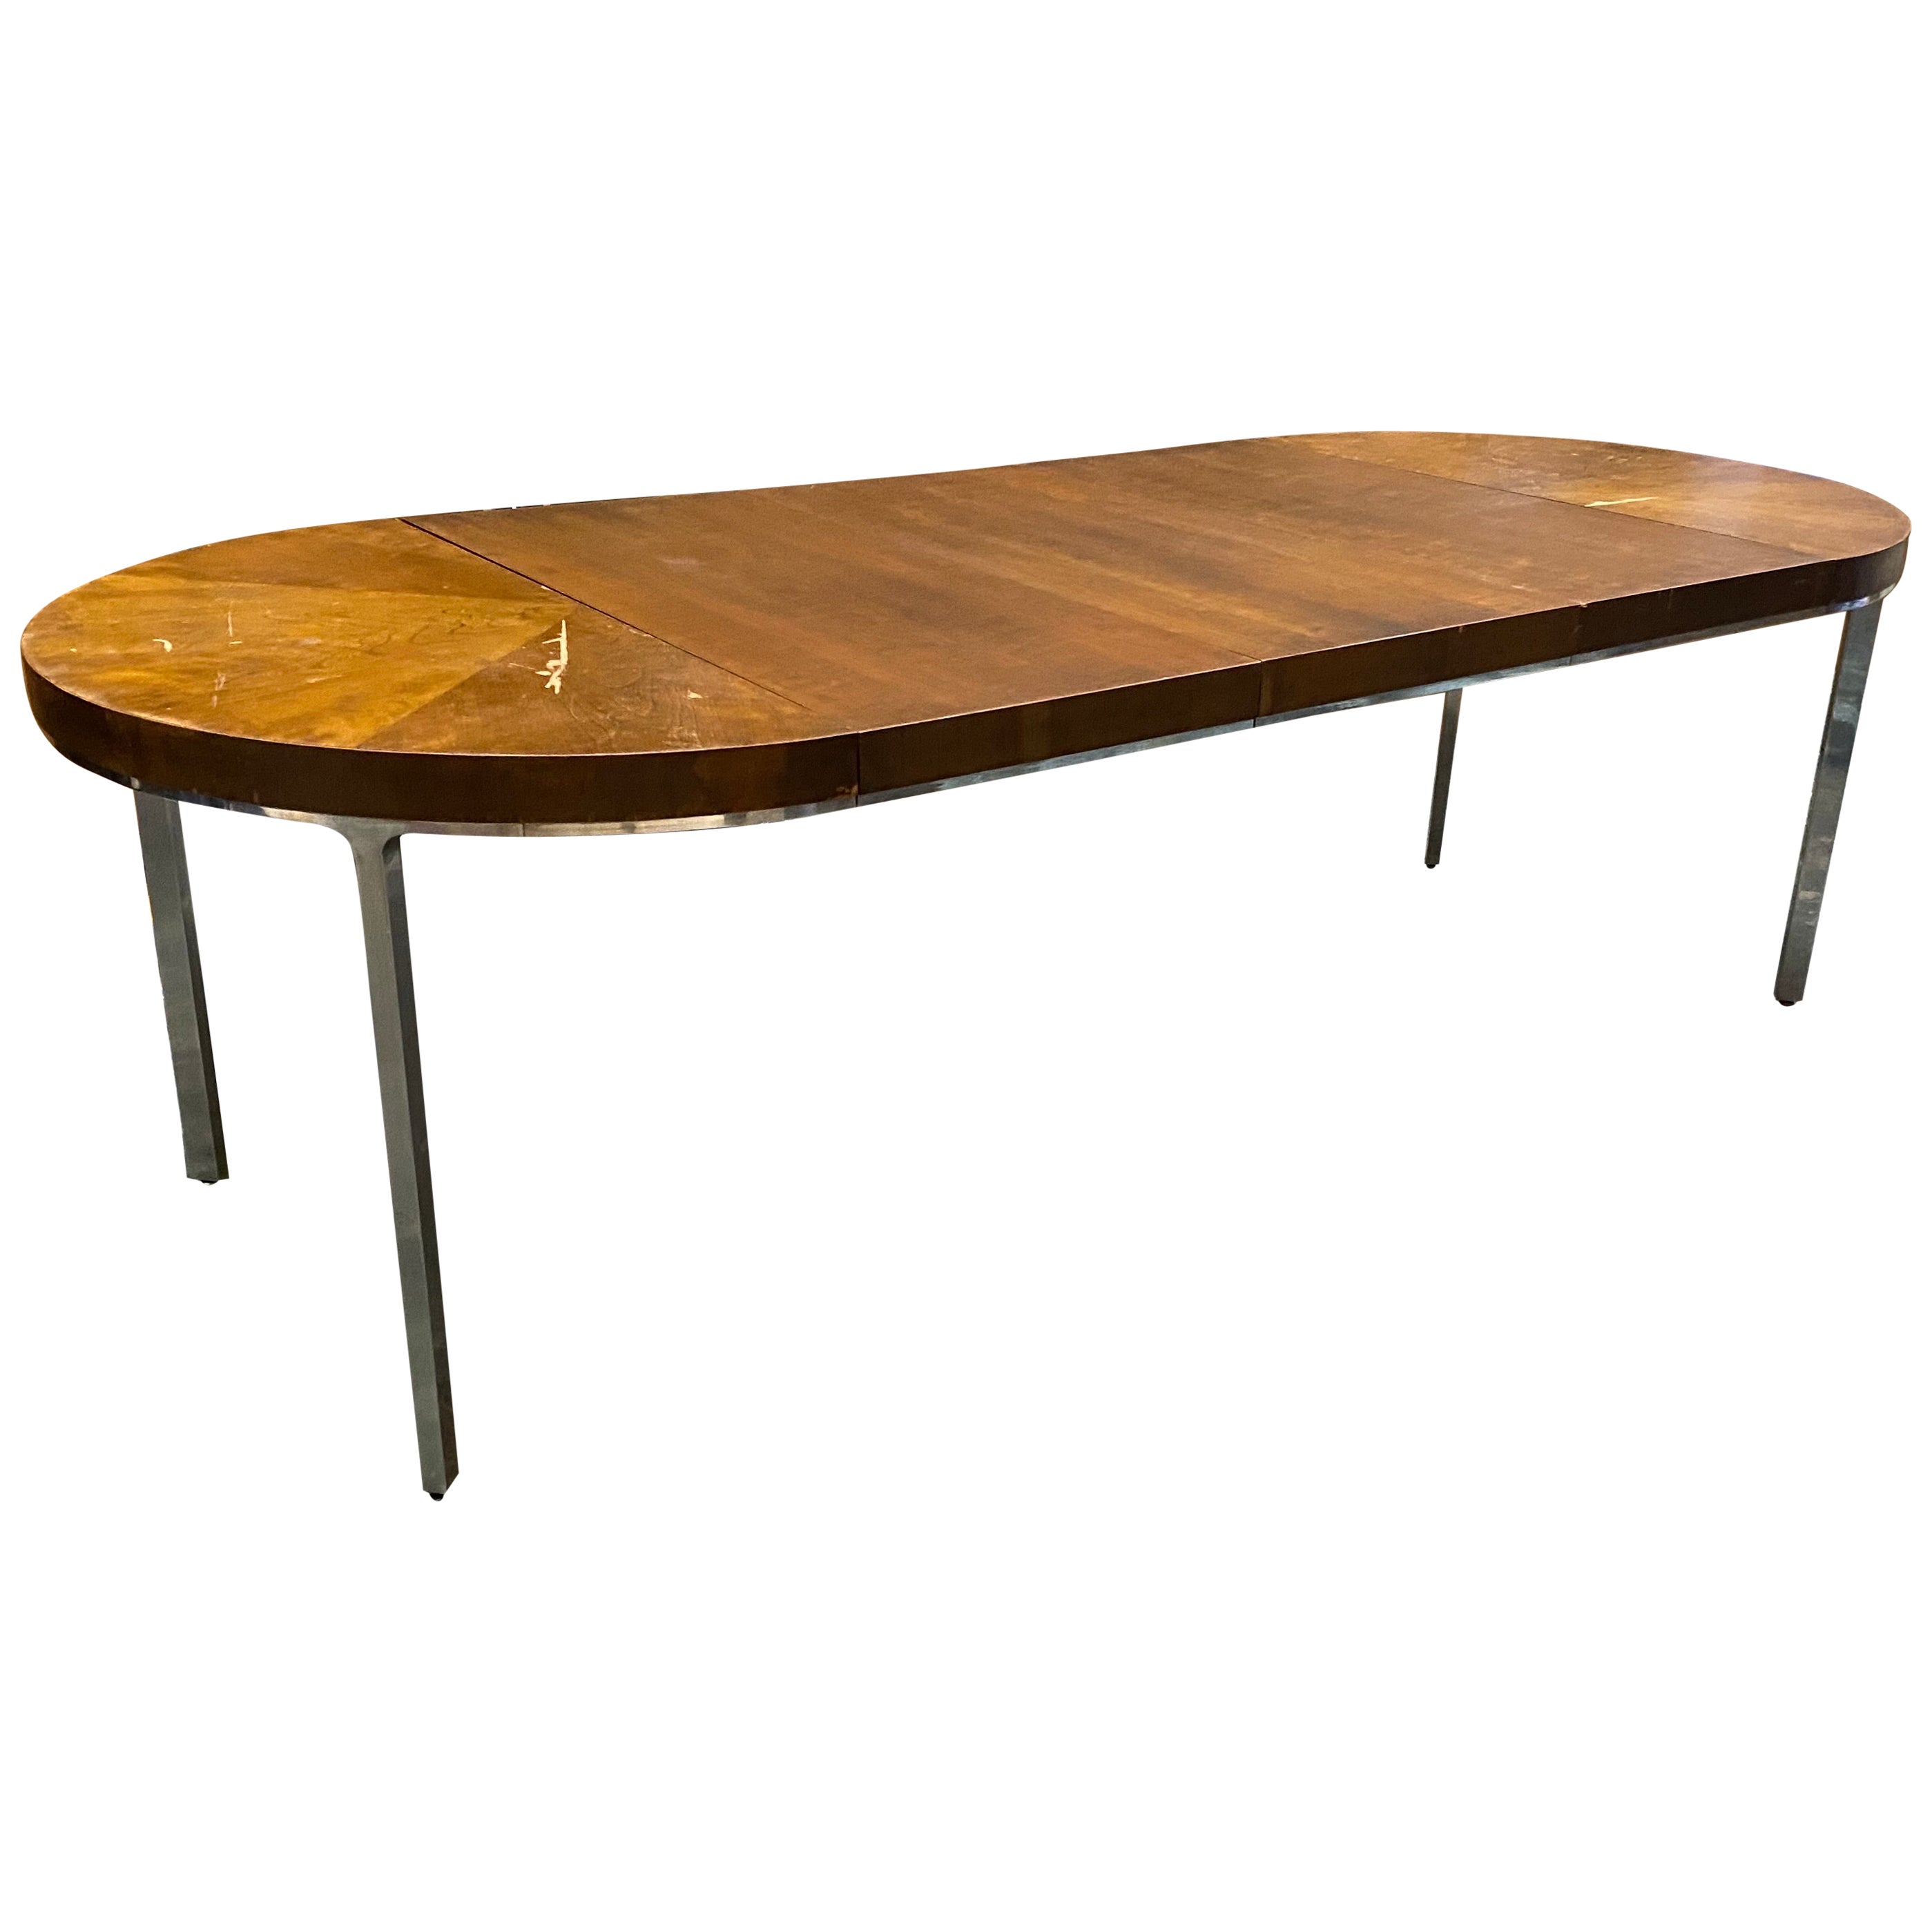 Table de salle à manger ronde à rallonge moderne en acier inoxydable et bois assorti au noyer